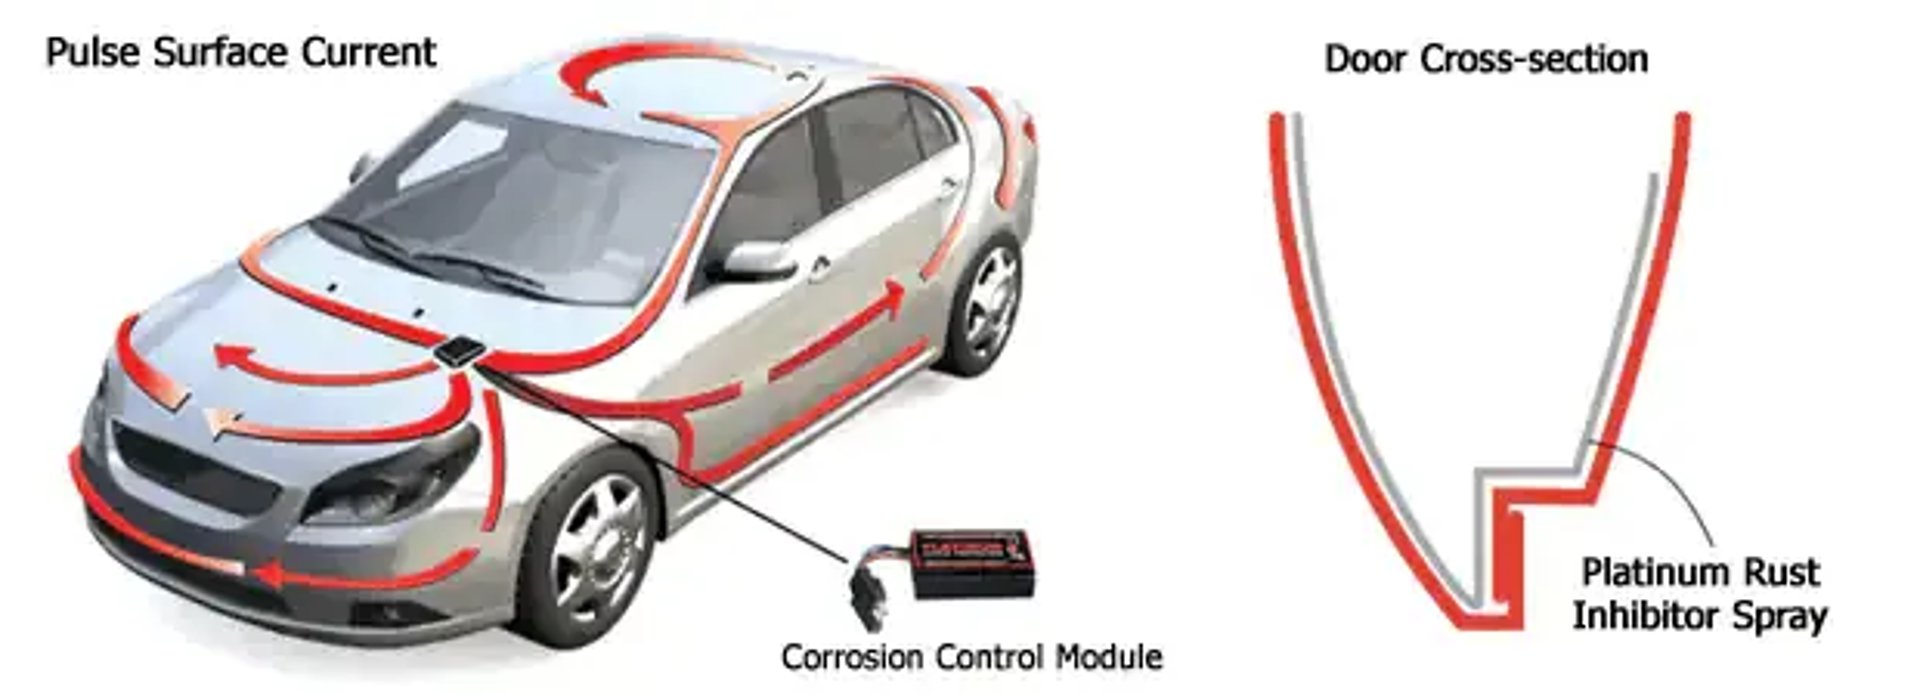 Murray Shield Corrosion Control Module